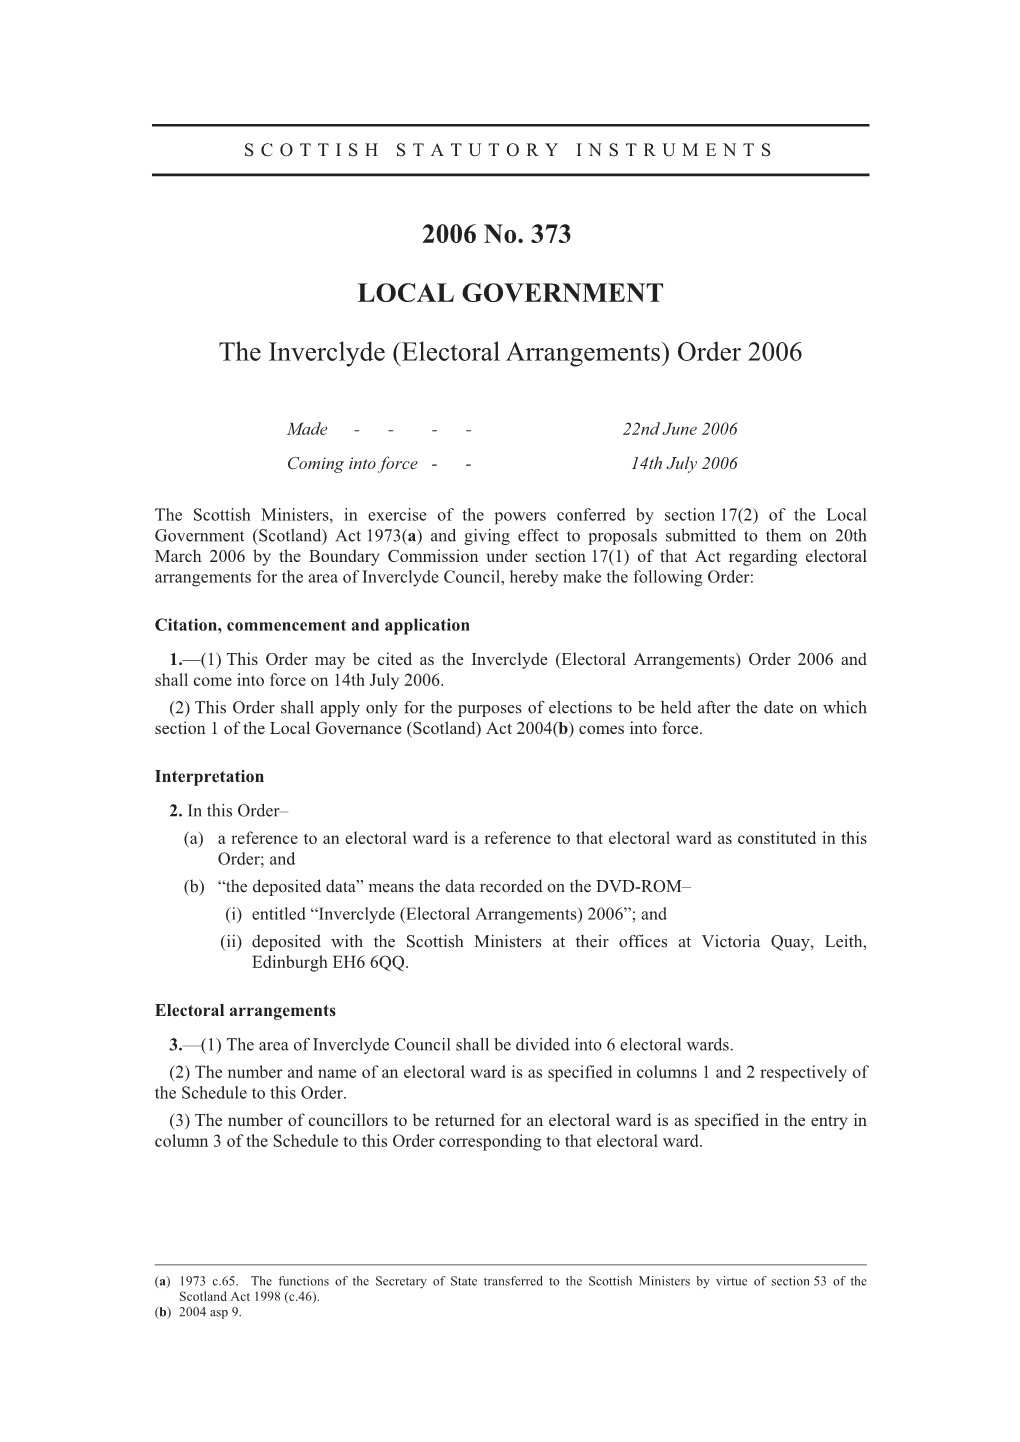 2006 No. 373 LOCAL GOVERNMENT the Inverclyde